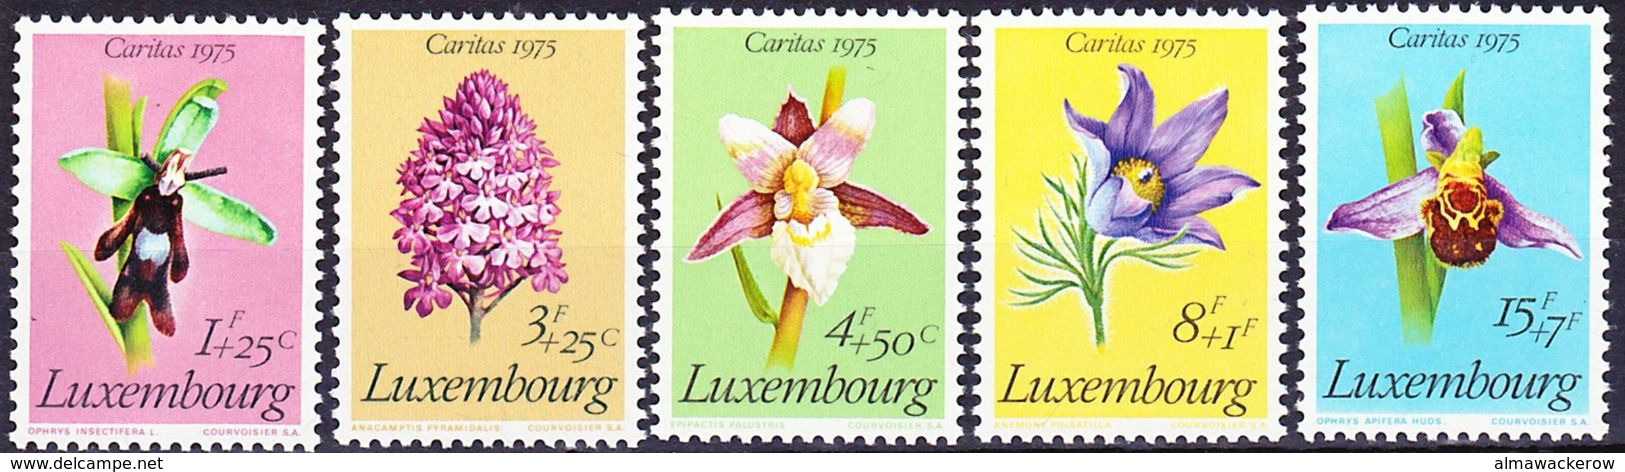 20-051 Luxemburg 1975 Flowers Caritas Complete Set Mi 914-918 MNH ** - 1965-91 Giovanni